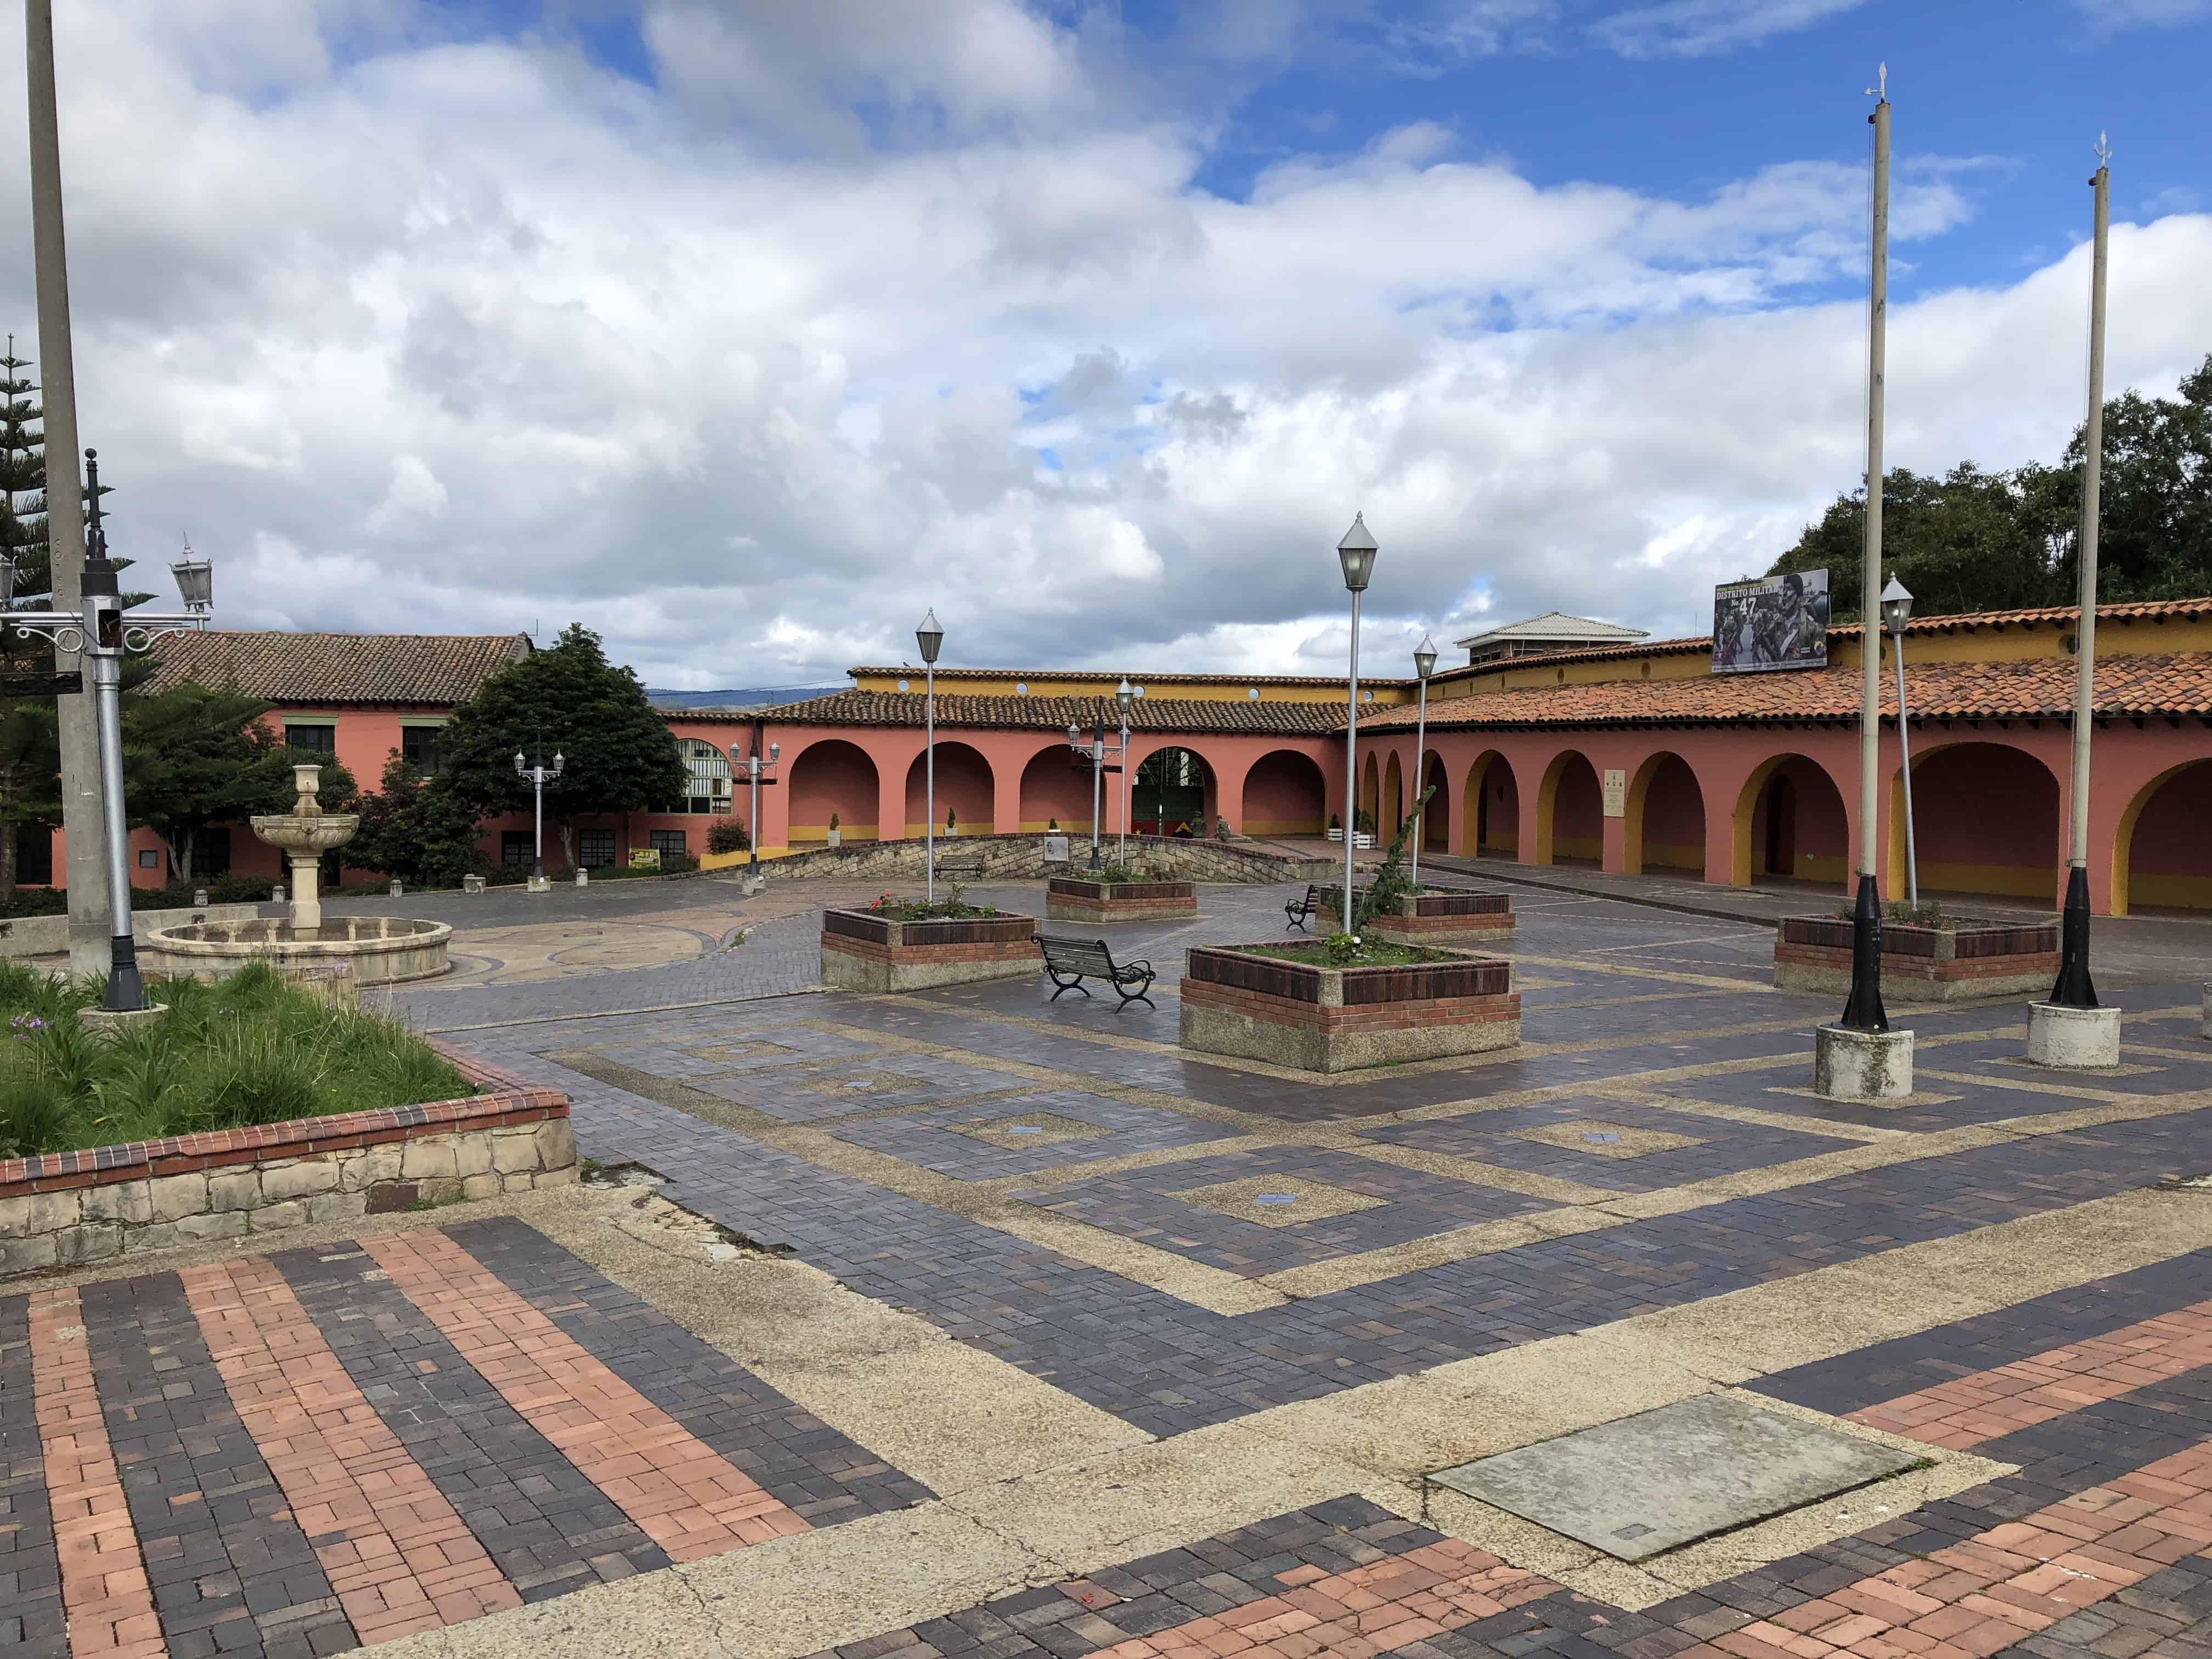 Parque Villaveces in Zipaquirá, Cundinamarca, Colombia